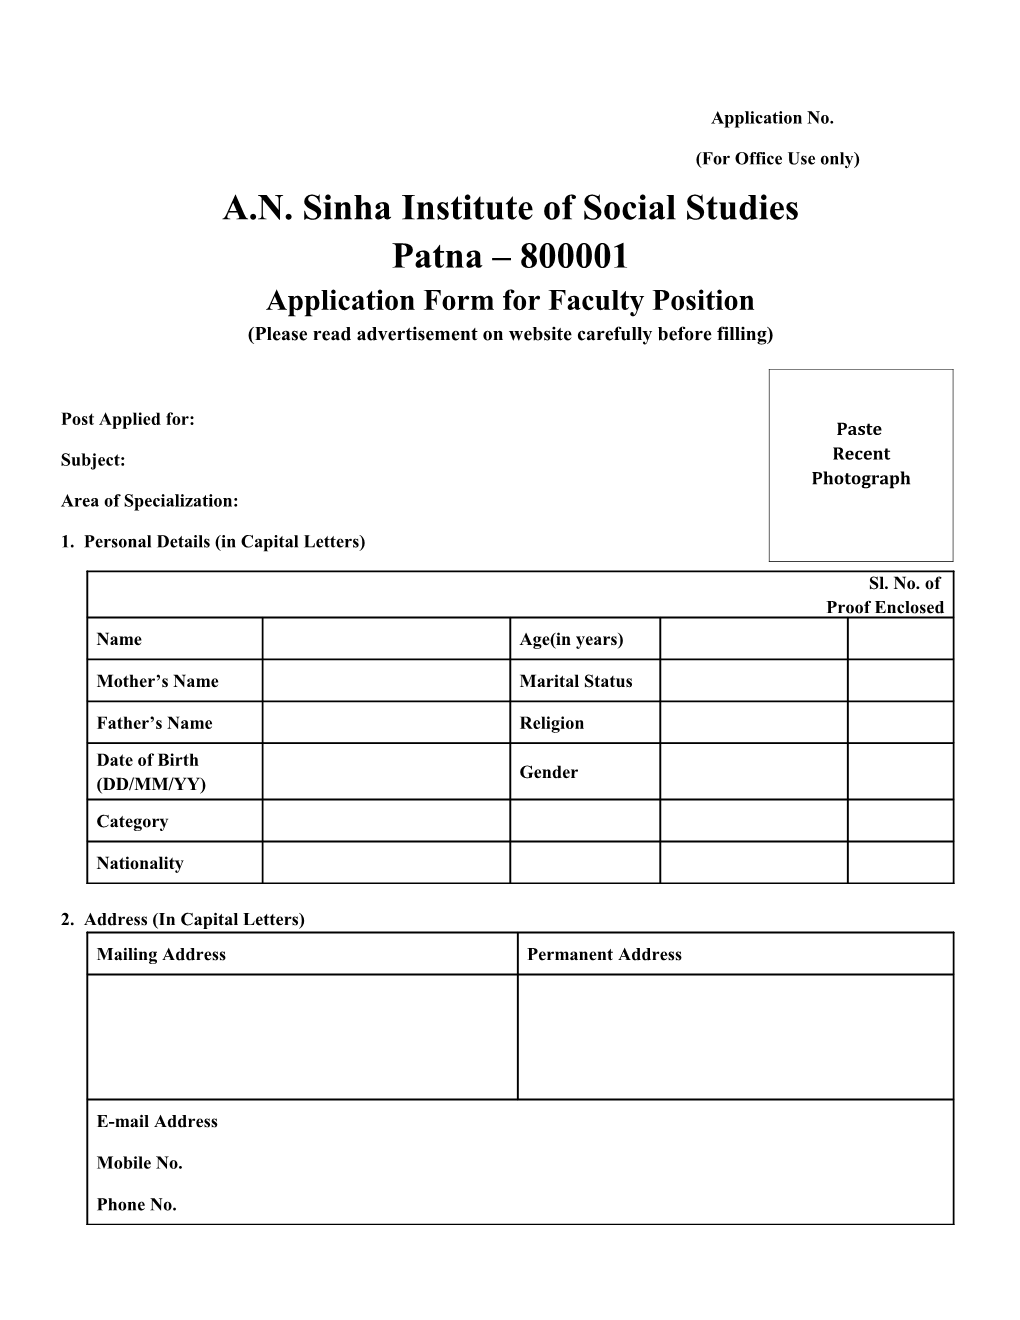 A.N. Sinha Institute of Social Studies